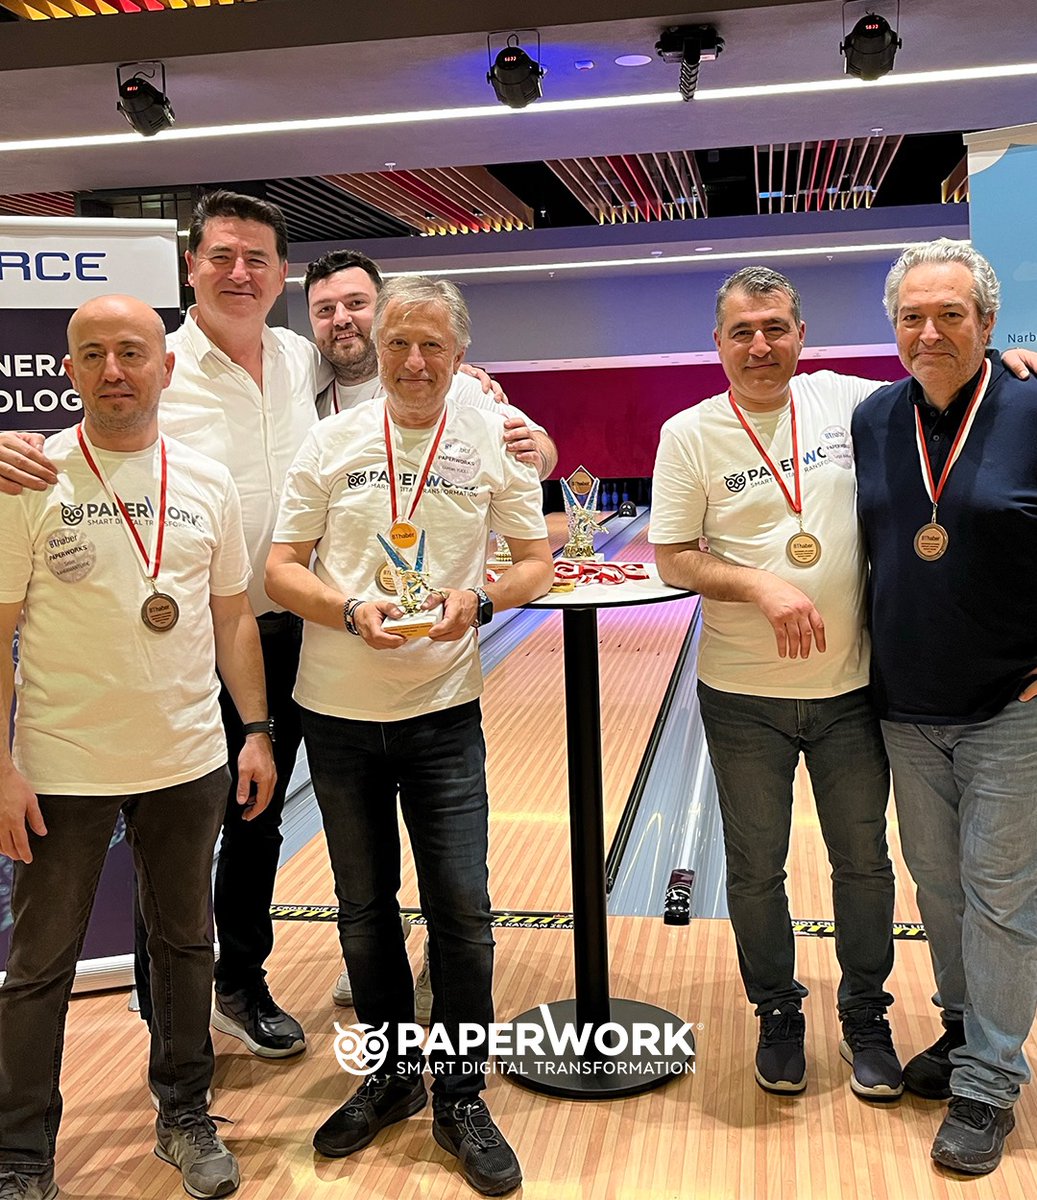 PaperWorklülerden bir sayı daha! PaperWork ekibi 24 Nisan Çarşamba günü gerçekleşen BT Haber Şirketlerarası Bowling Turnuvası’nda 38 takım arasından 3. oldu! Bowling takımımızı başarılarından ötürü tebrik ediyoruz! #strike #bowling #turnuva #paperwork